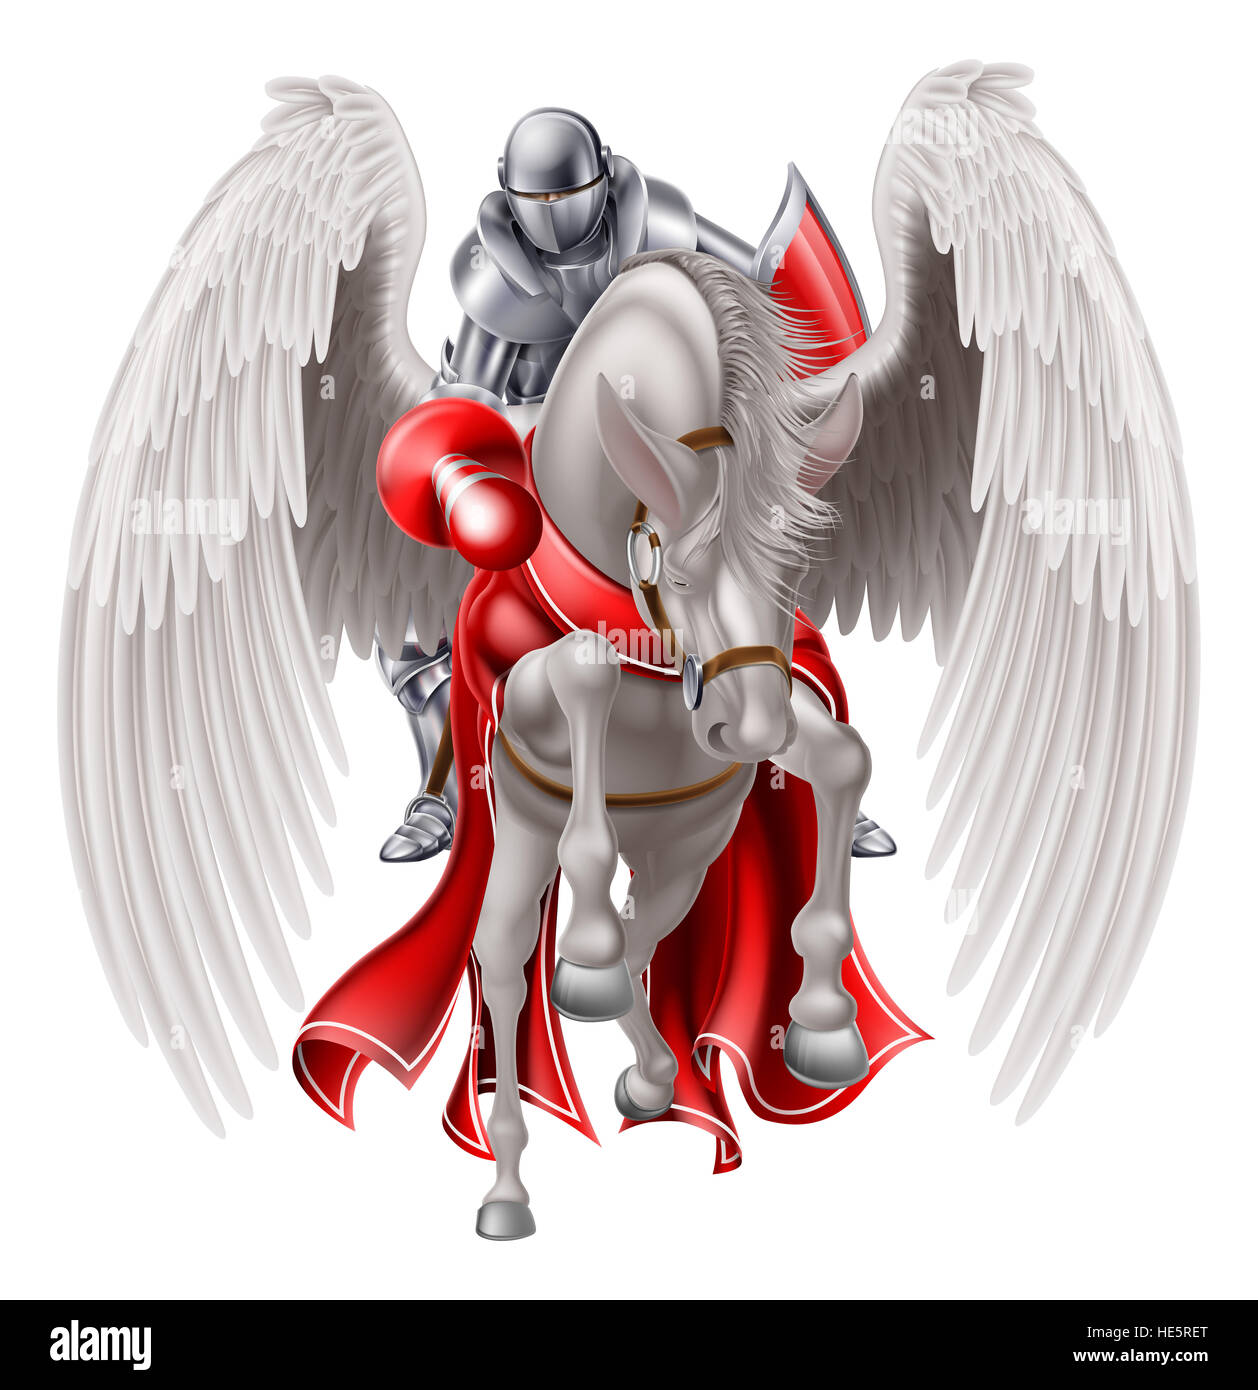 En la armadura de caballero medieval en un legendario caballo alado Pegaso mitológico sosteniendo un lance listo para un joust o combate. Foto de stock